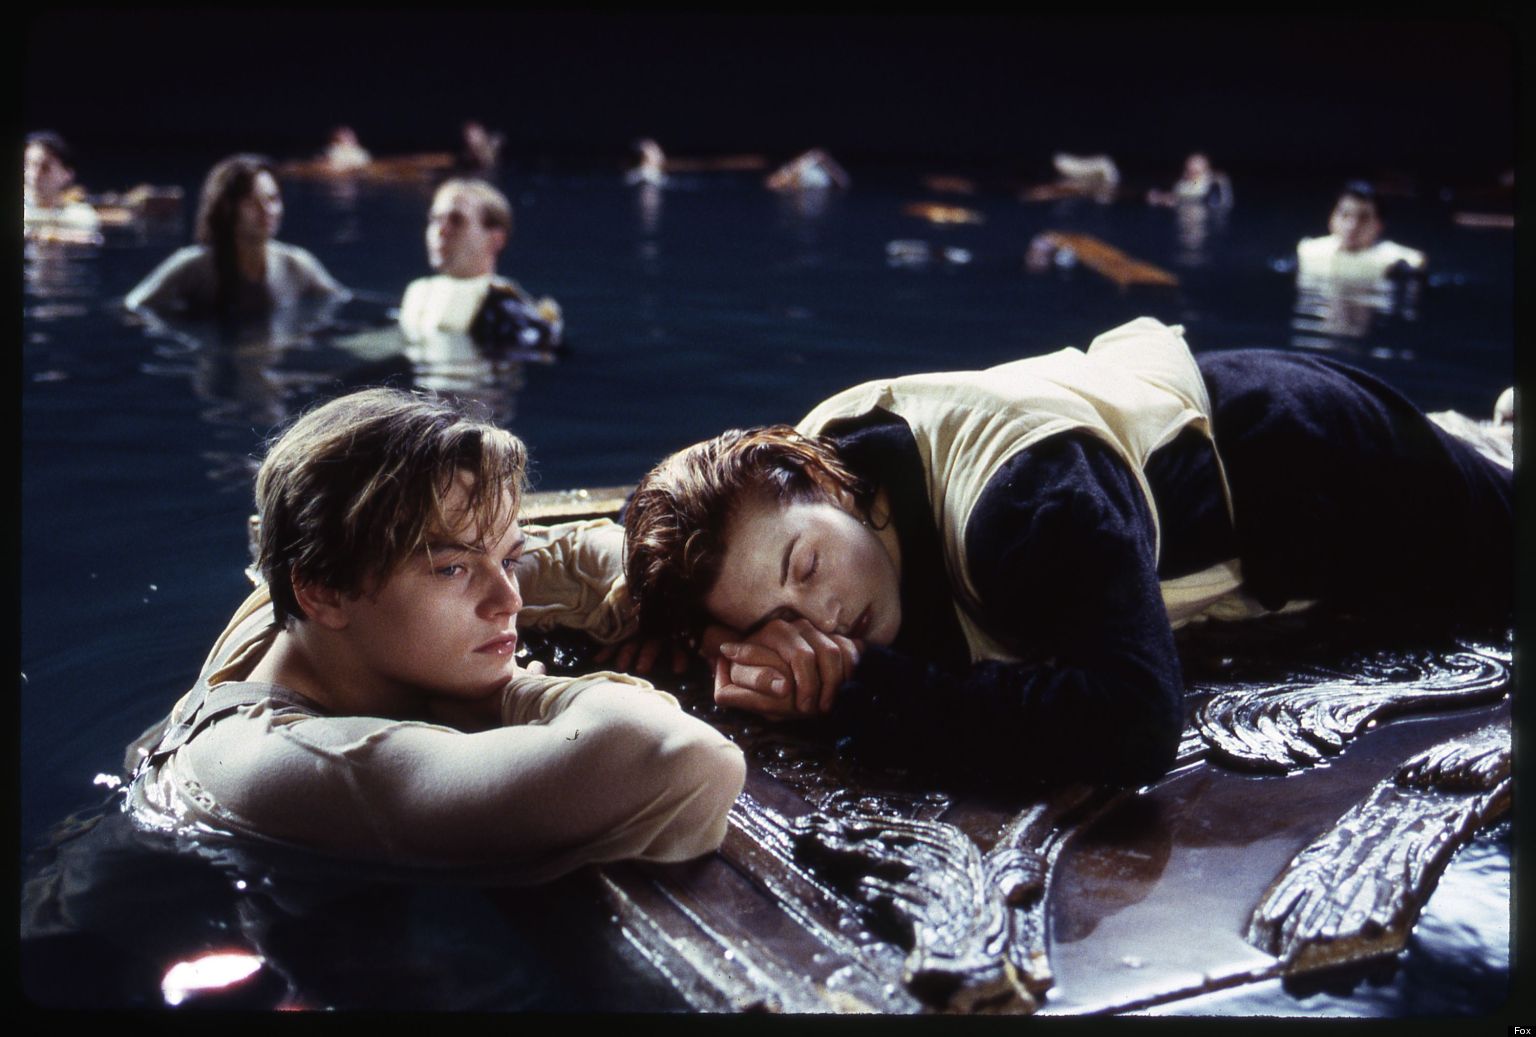 Момент из кинофильма. ДИКАПРИО О Титанике с Кейт Уинслет. Ди Каприо Титаник. Титаник ди Каприо 1998. Ди Каприо и Уинслет Титаник.